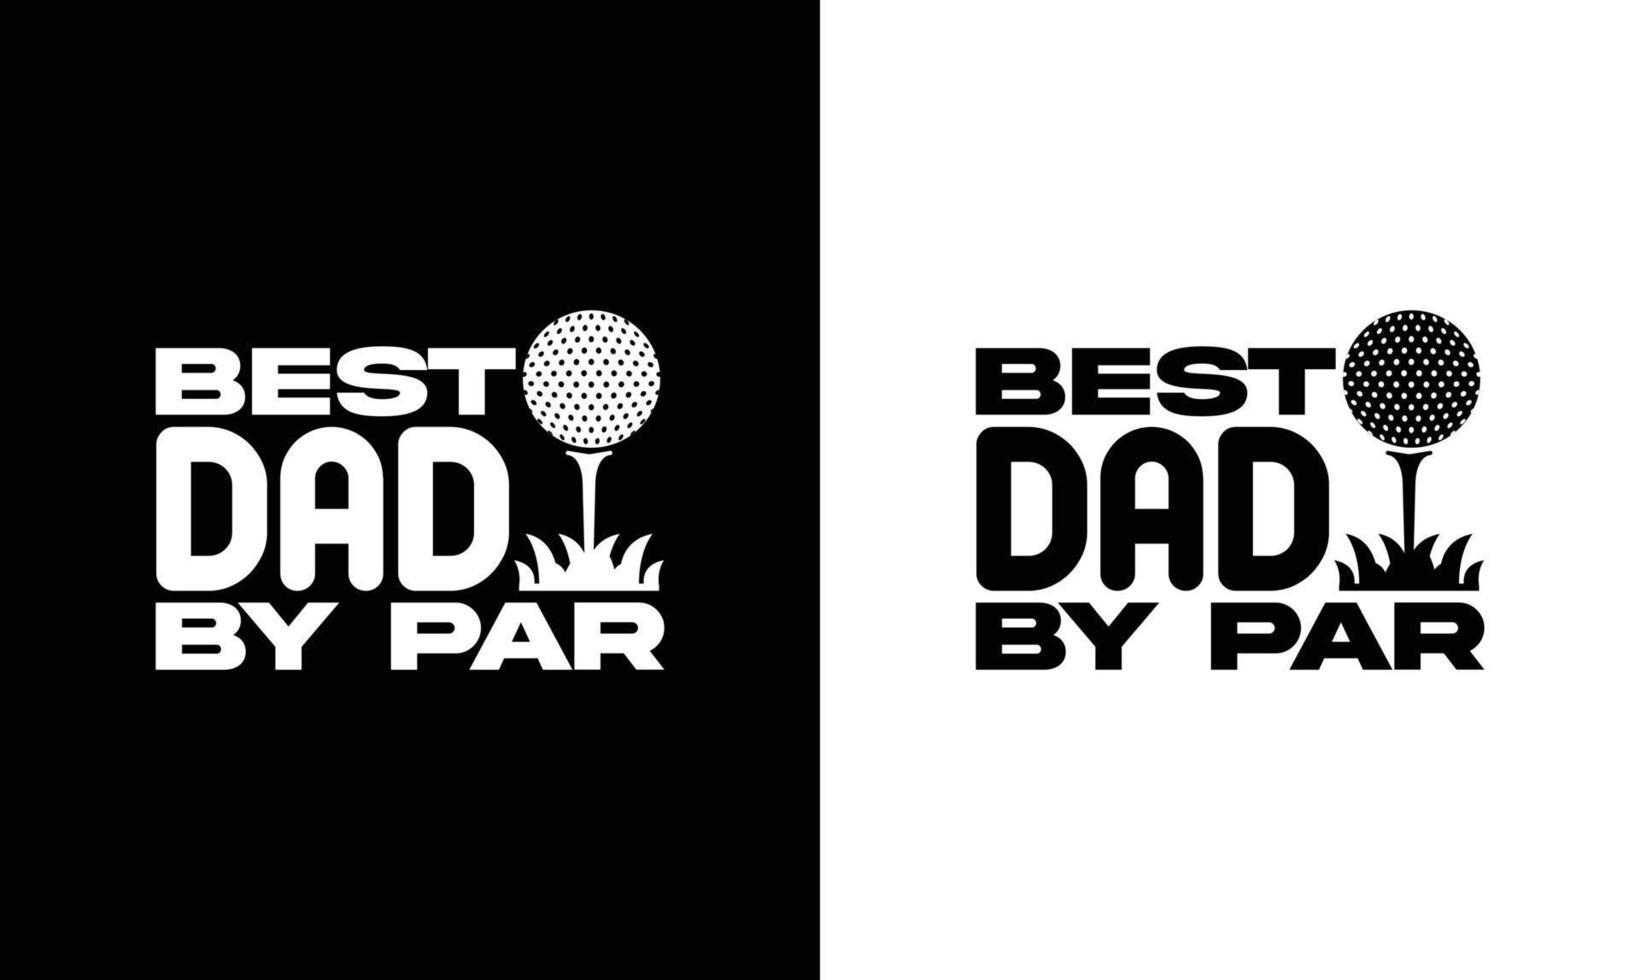 golf citaat t overhemd ontwerp, typografie vector